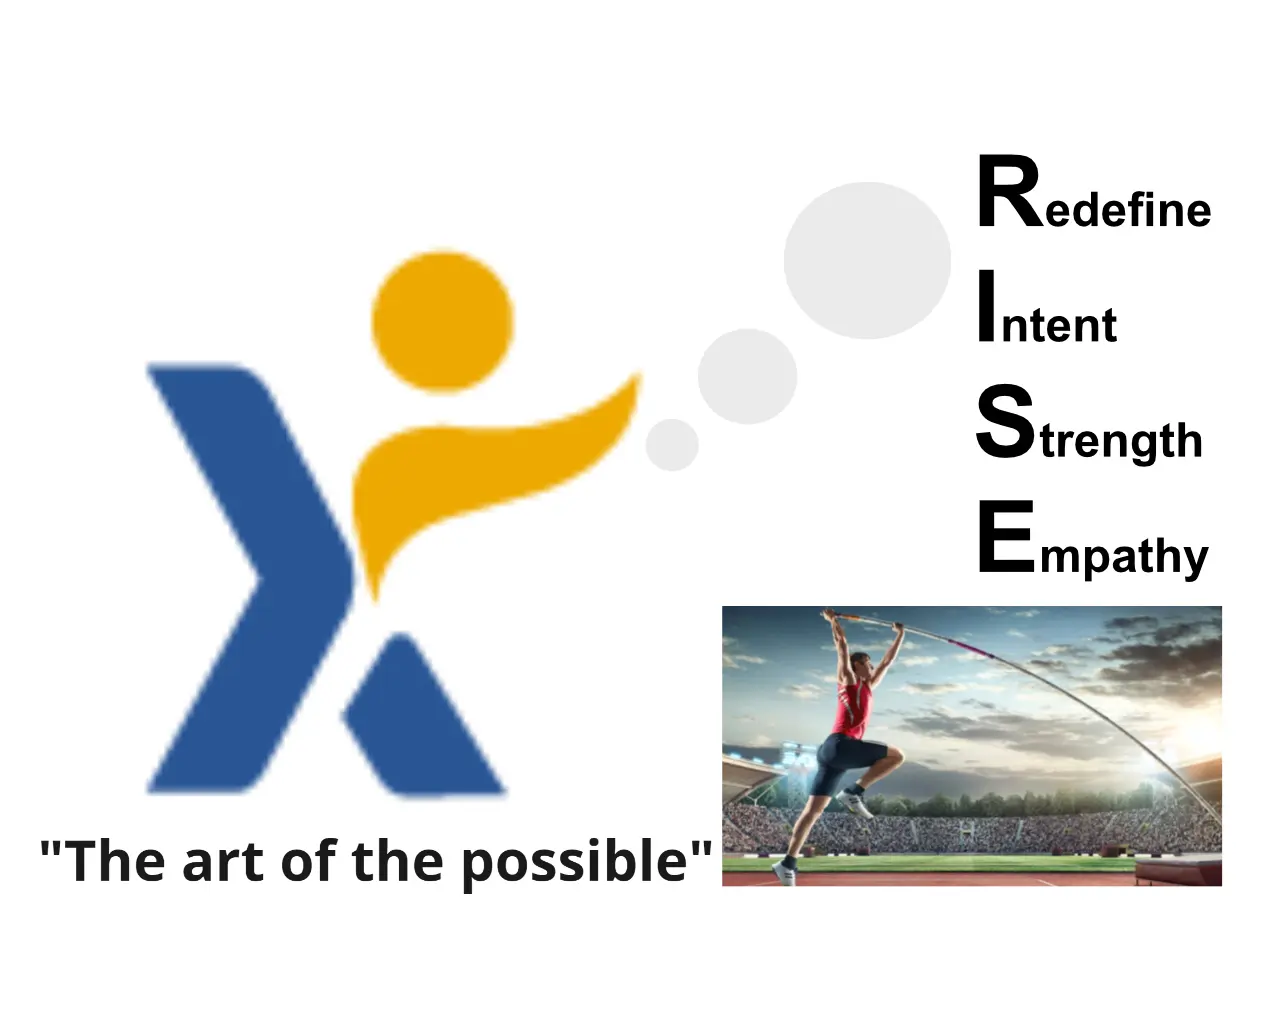 XploreAgile's RISE Leadership workshop